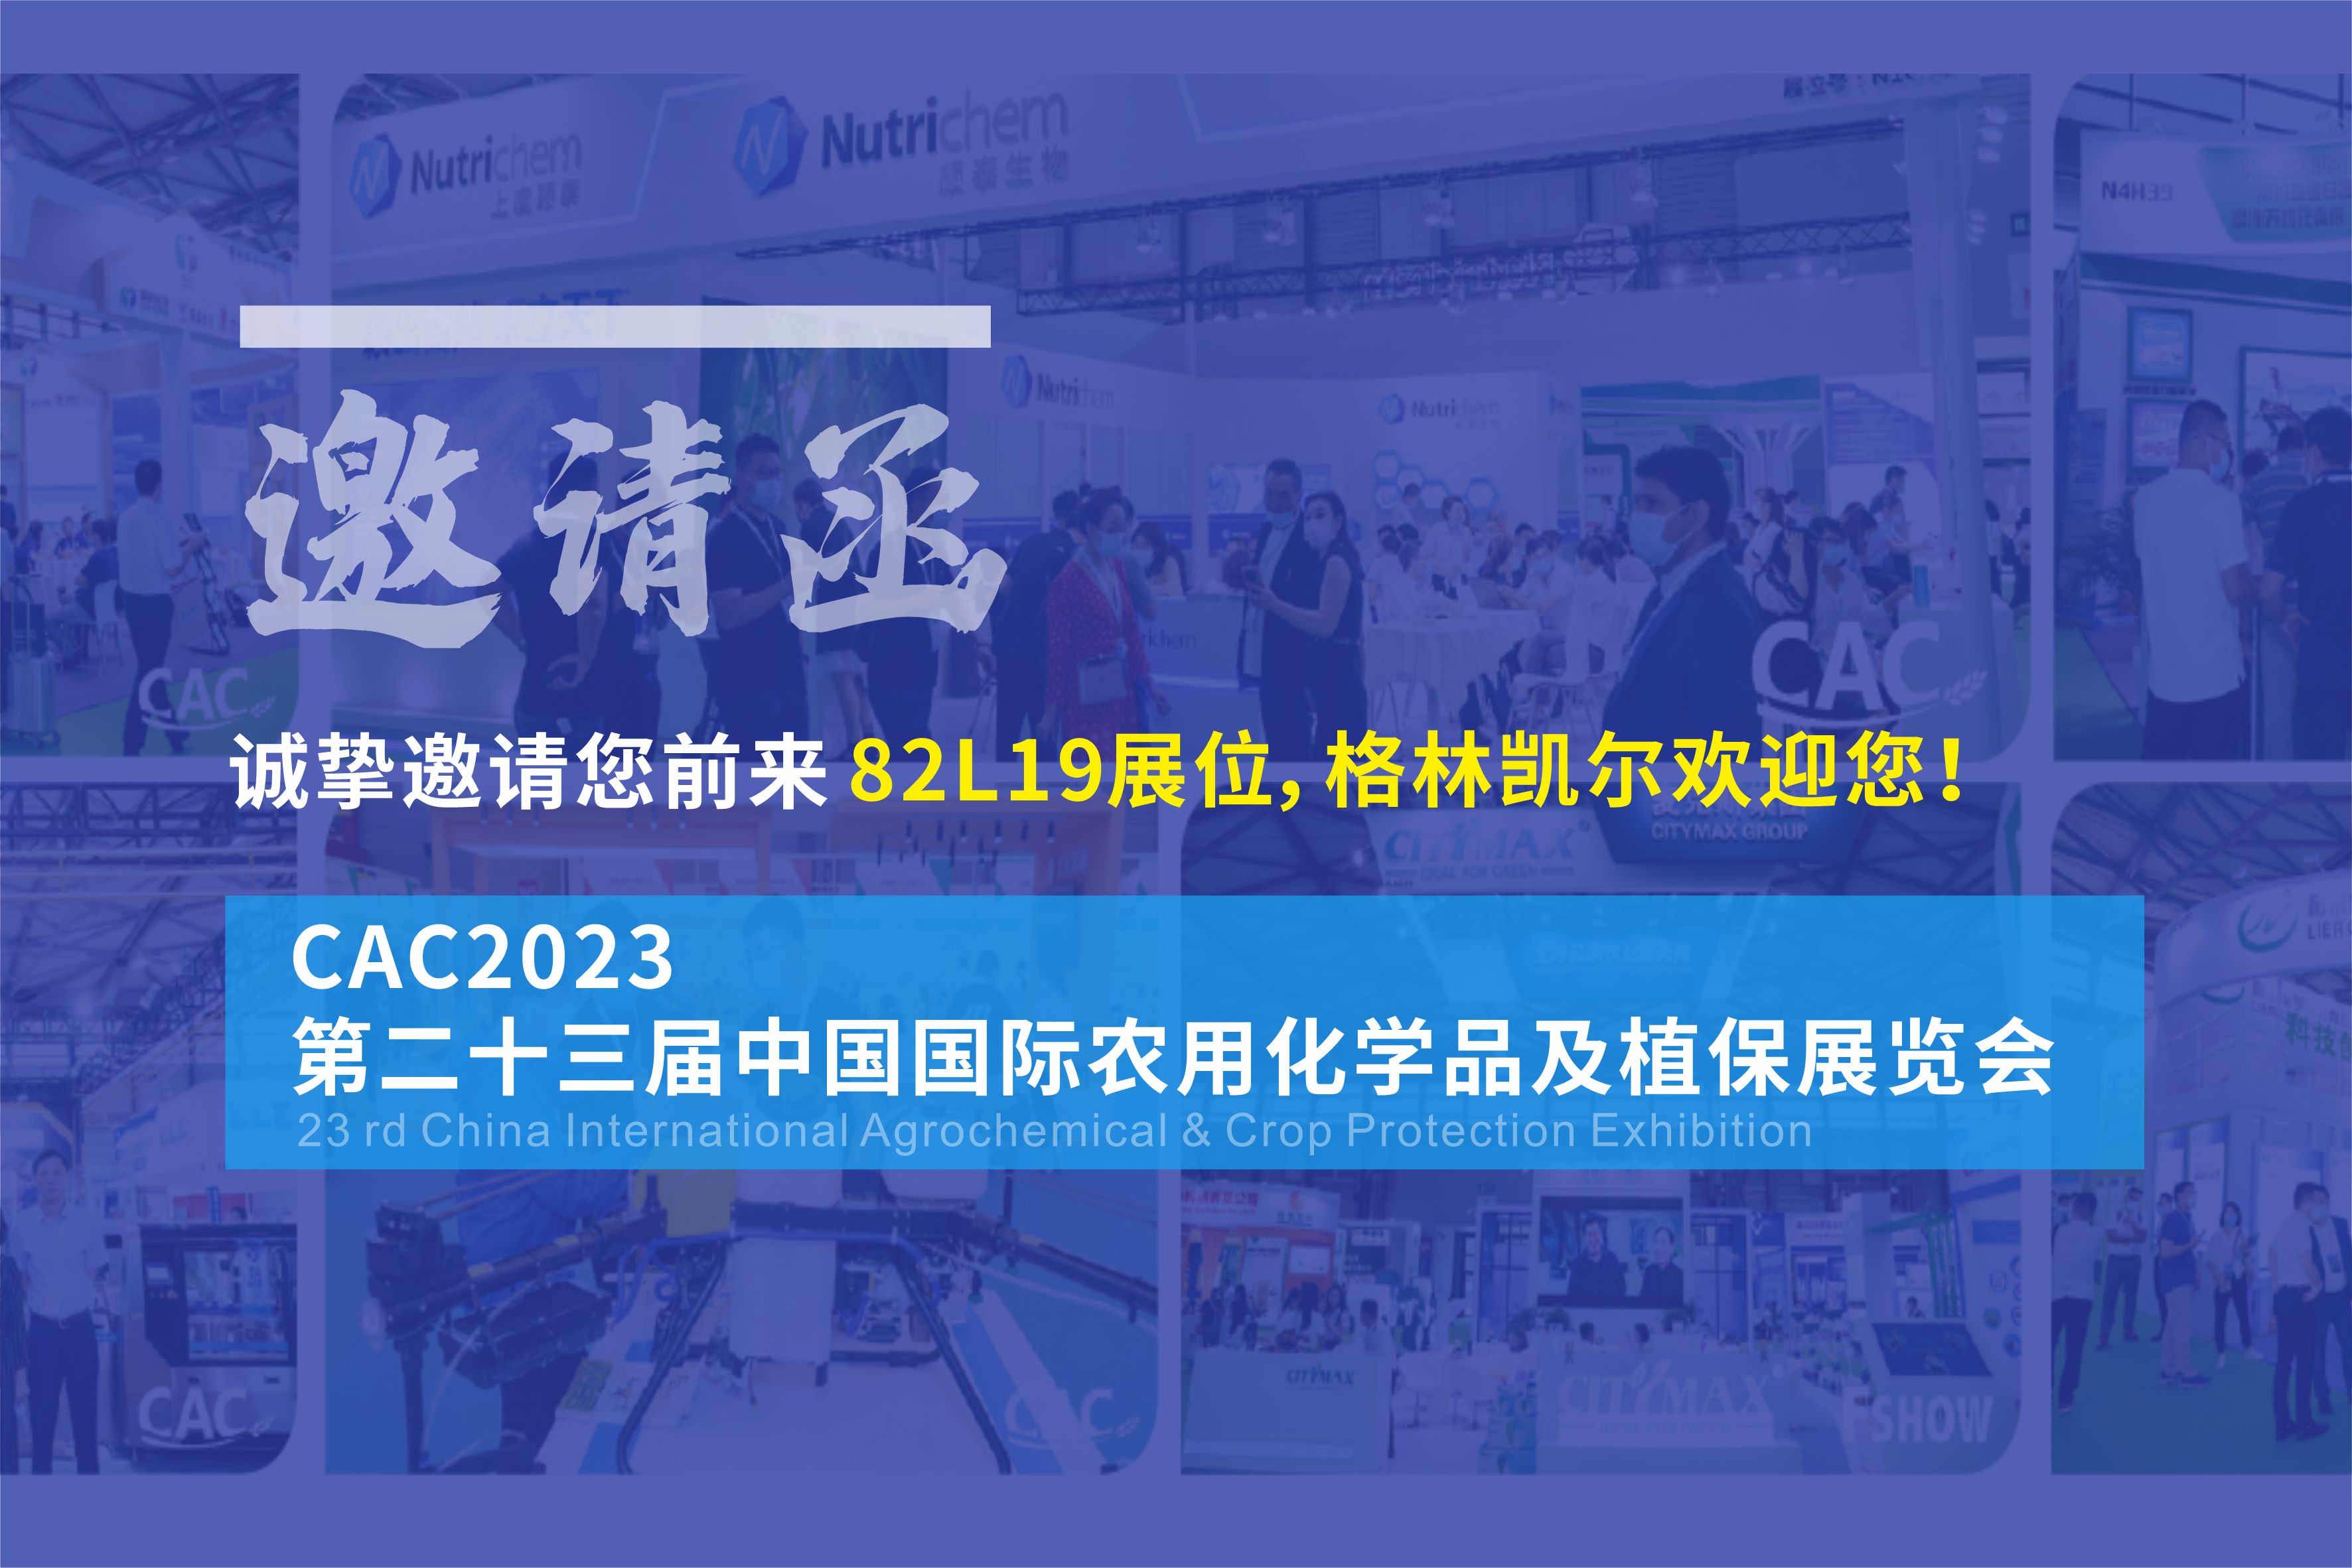 格林凯尔邀您观展——第23届中国农化展（CAC2023）